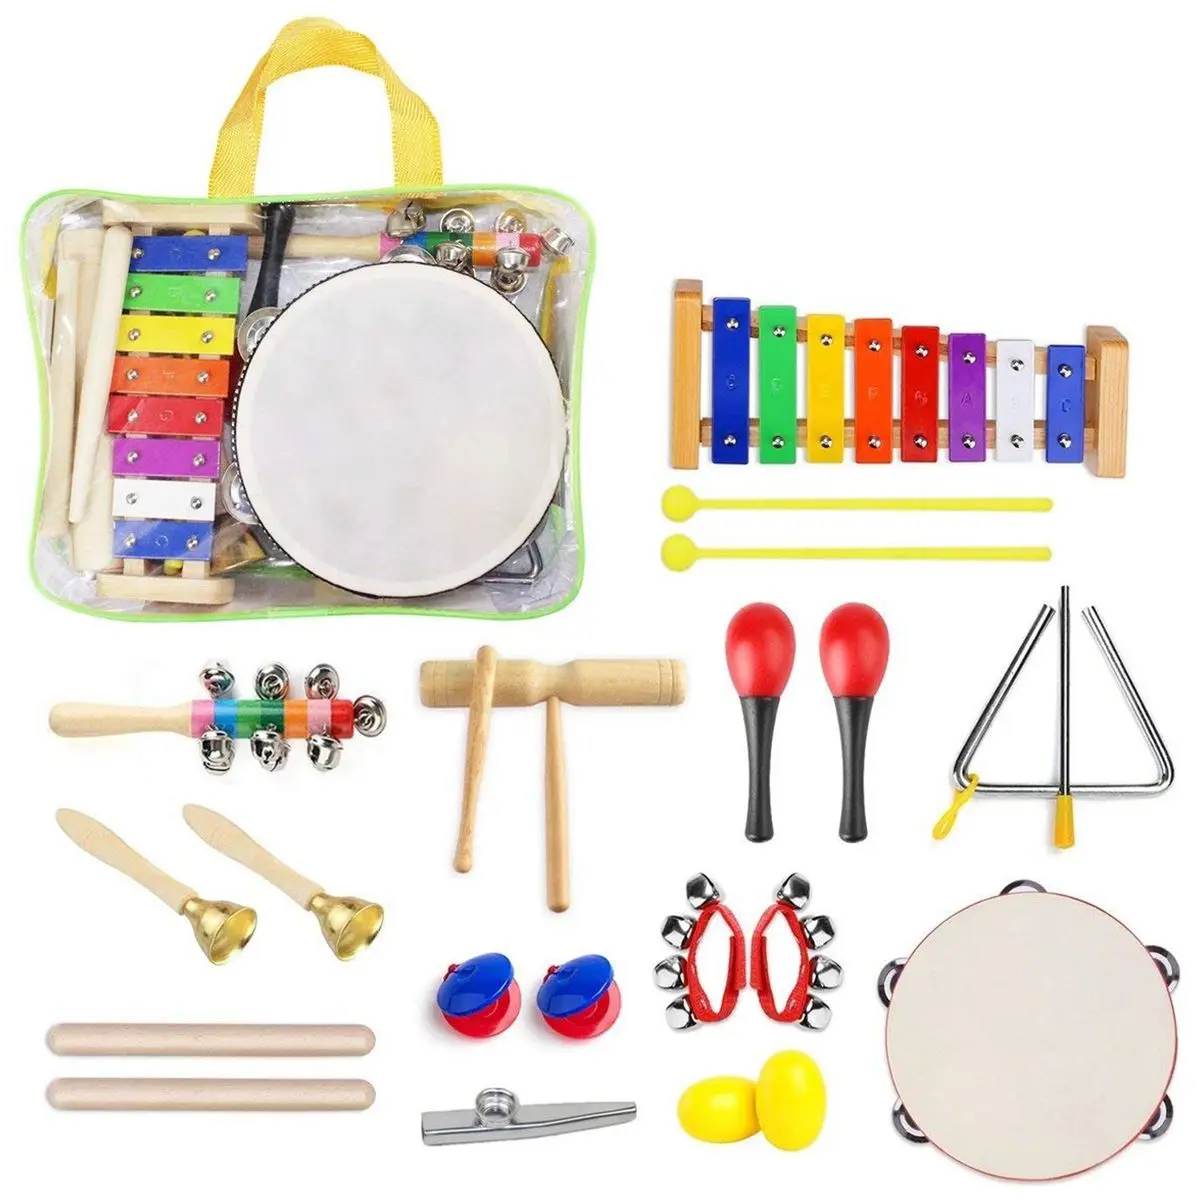 22 шт. музыкальный набор инструментов для малышей, перкуссионные инструменты, игрушки для малышей, набор музыкальных игрушек, ритм-секция, на...